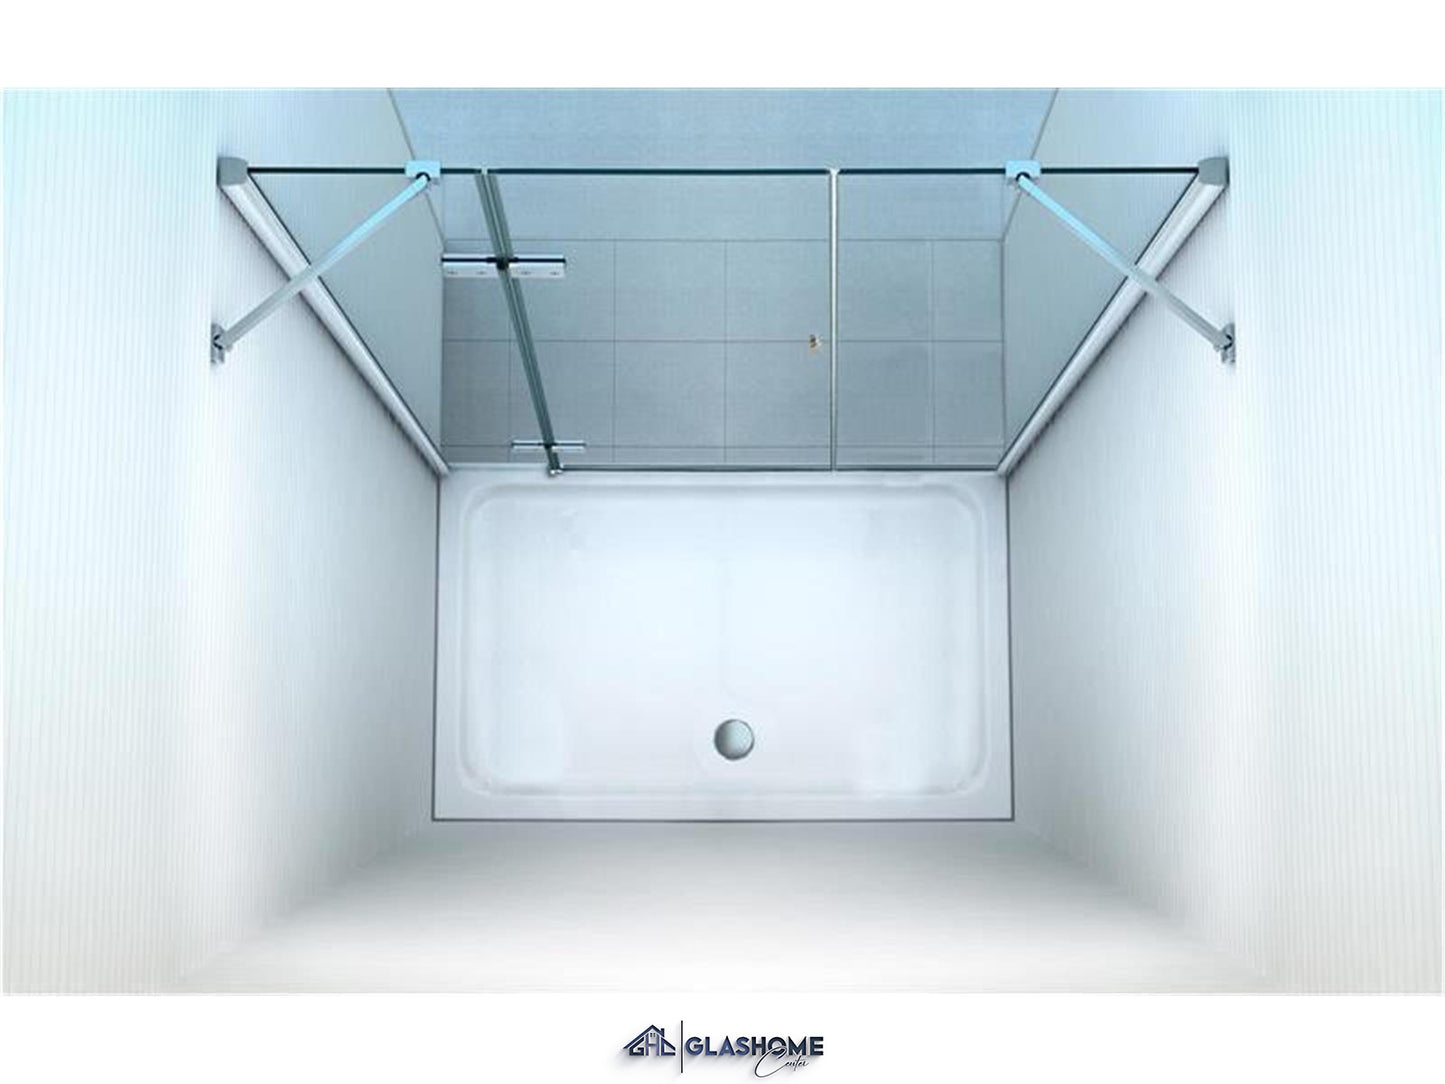 GlasHomeCenter - cabina nicho New York (175 x 195 cm) - vidrio de seguridad templado de 8 mm - sin plato de ducha